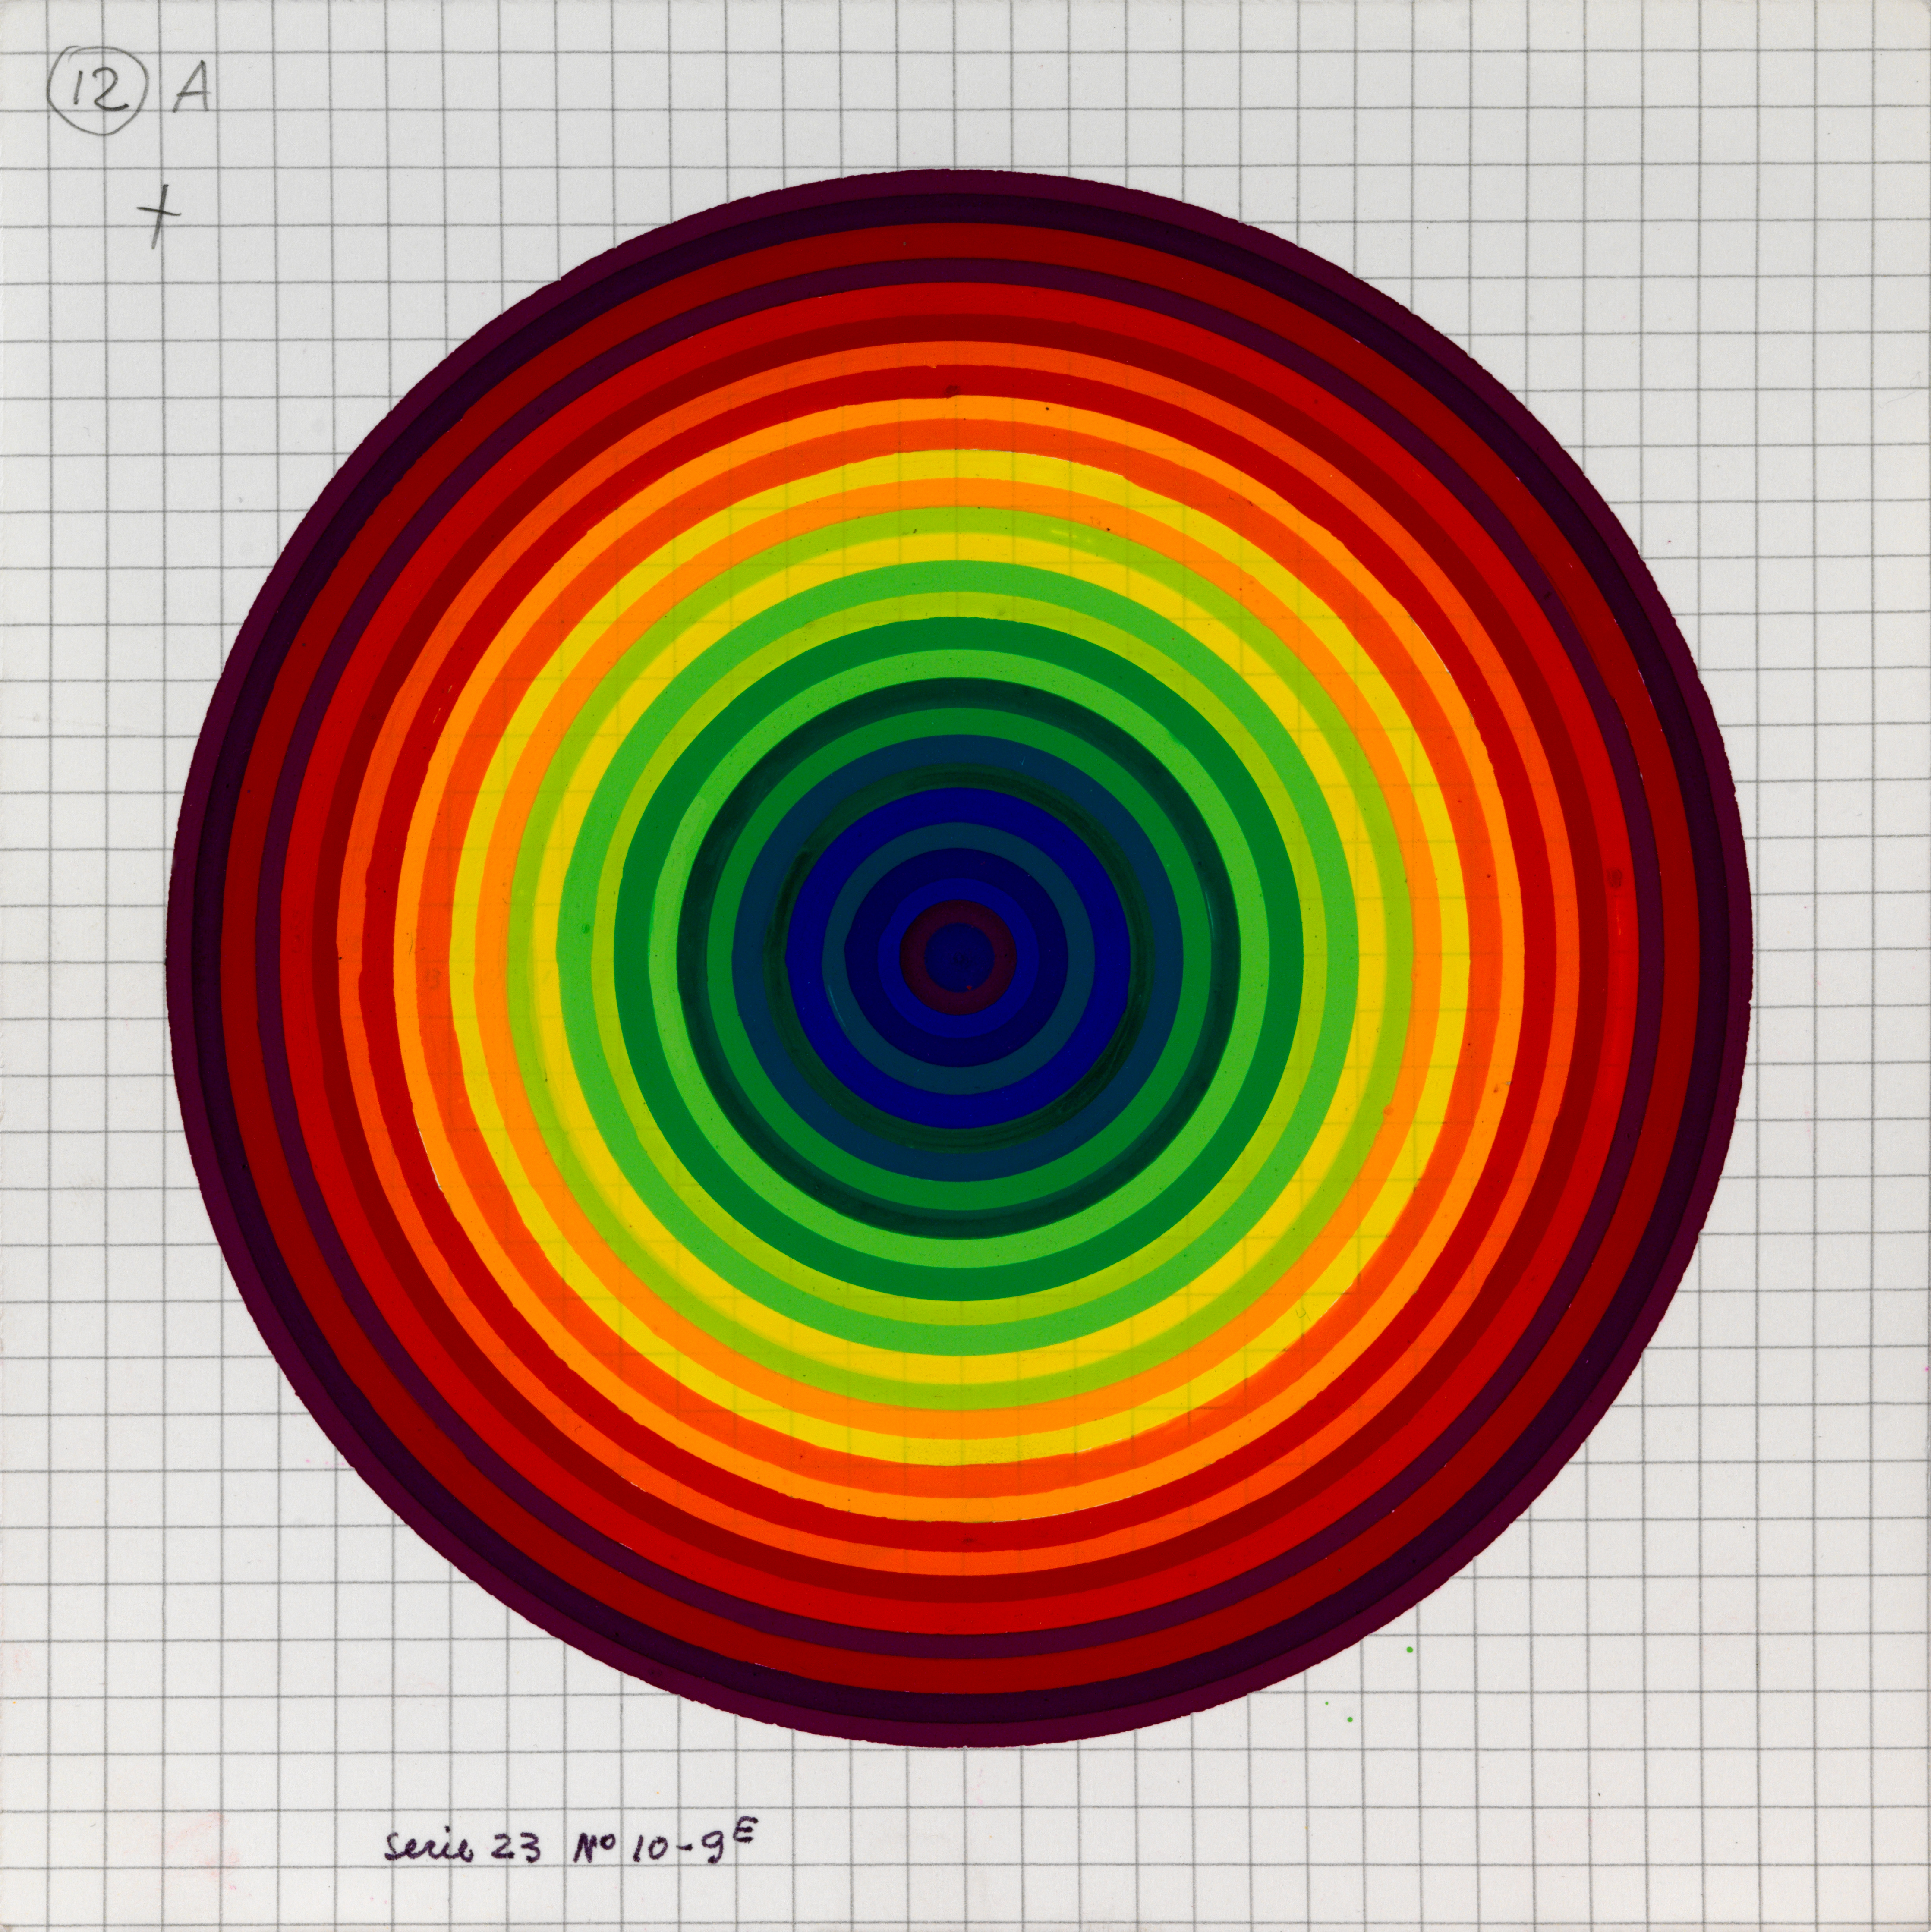 Julio Le Parc, Surface couleur, Cercles, série 23 n°10-9 E